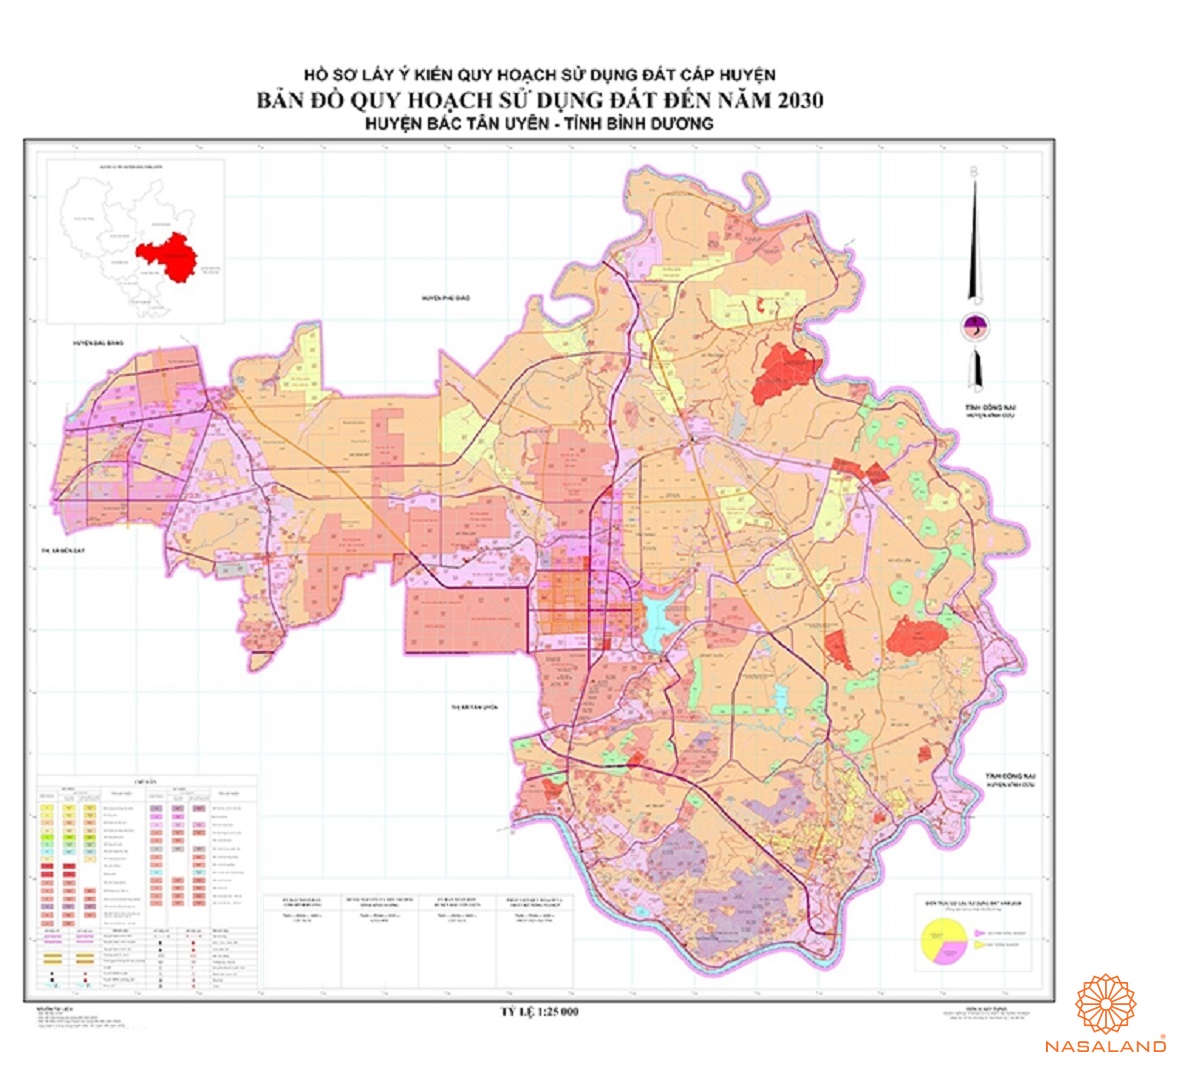 Quy hoạch sử dụng đất Huyện Bắc Tân Uyên thể hiện trên bản đồ quy hoạch phân khu tỷ lệ 1/2000 của Tỉnh Bình Dương